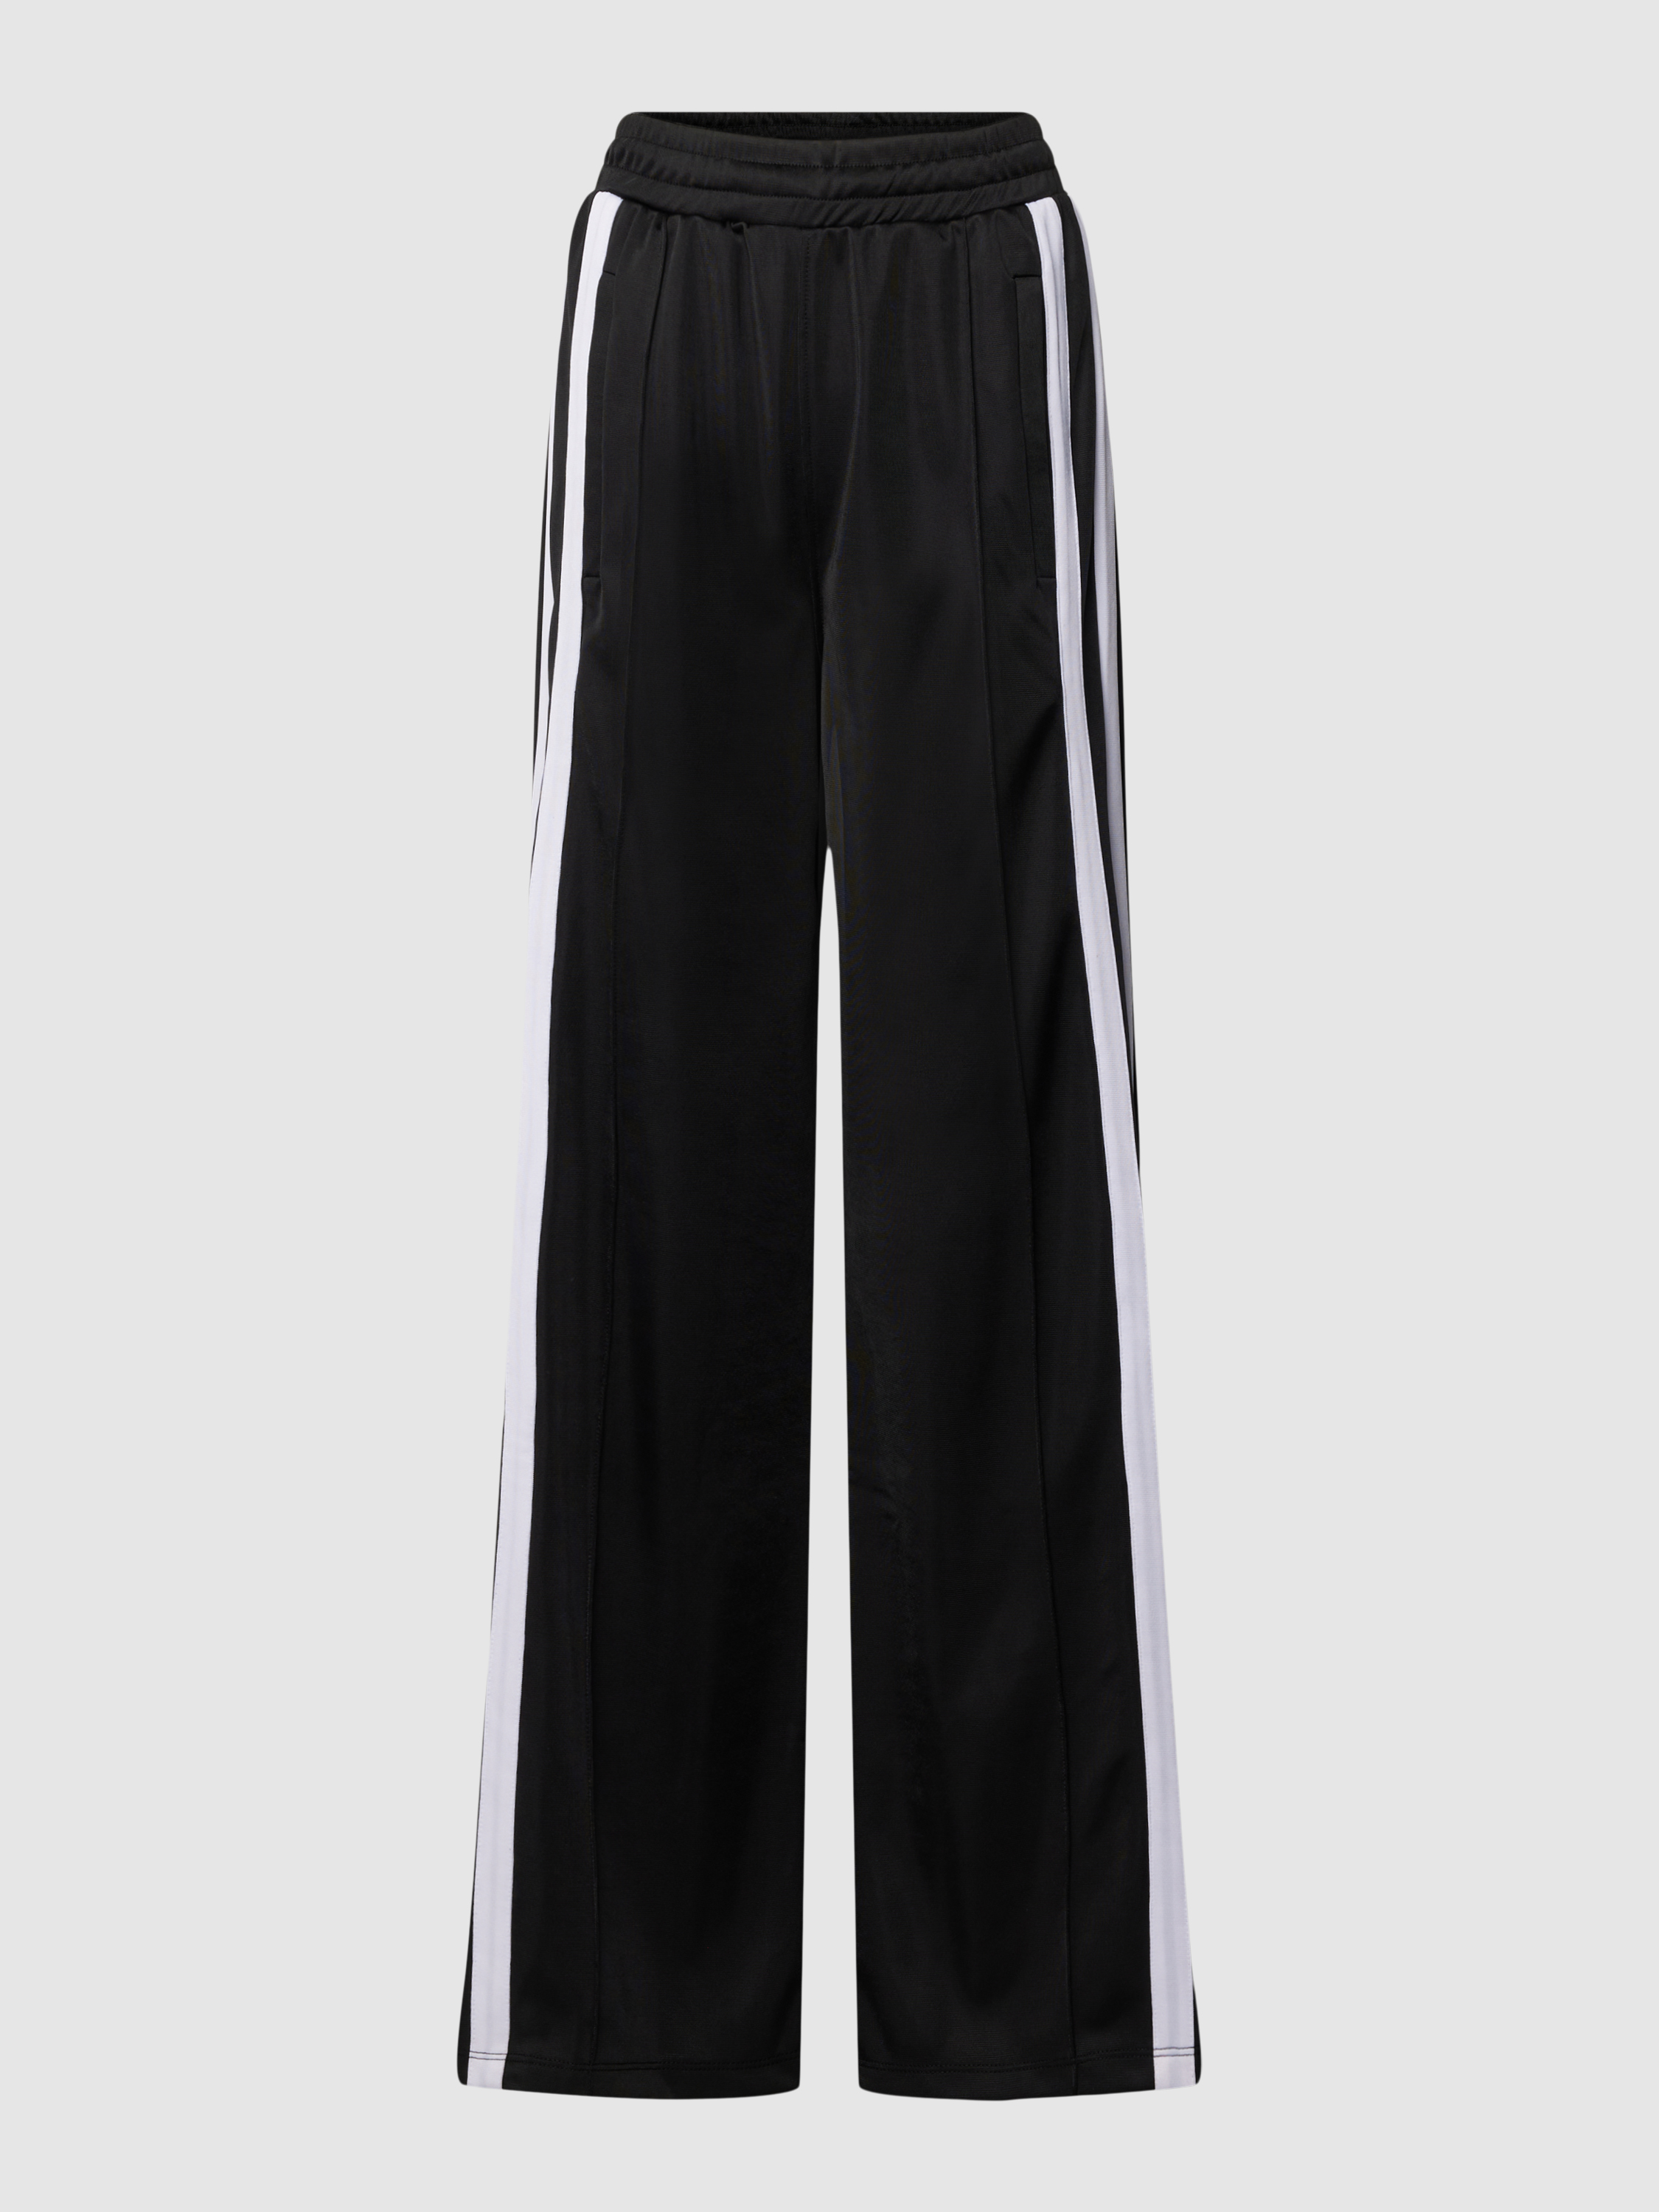 Спортивные брюки женские Karo Kauer 1903335 черные L (доставка из-за рубежа)